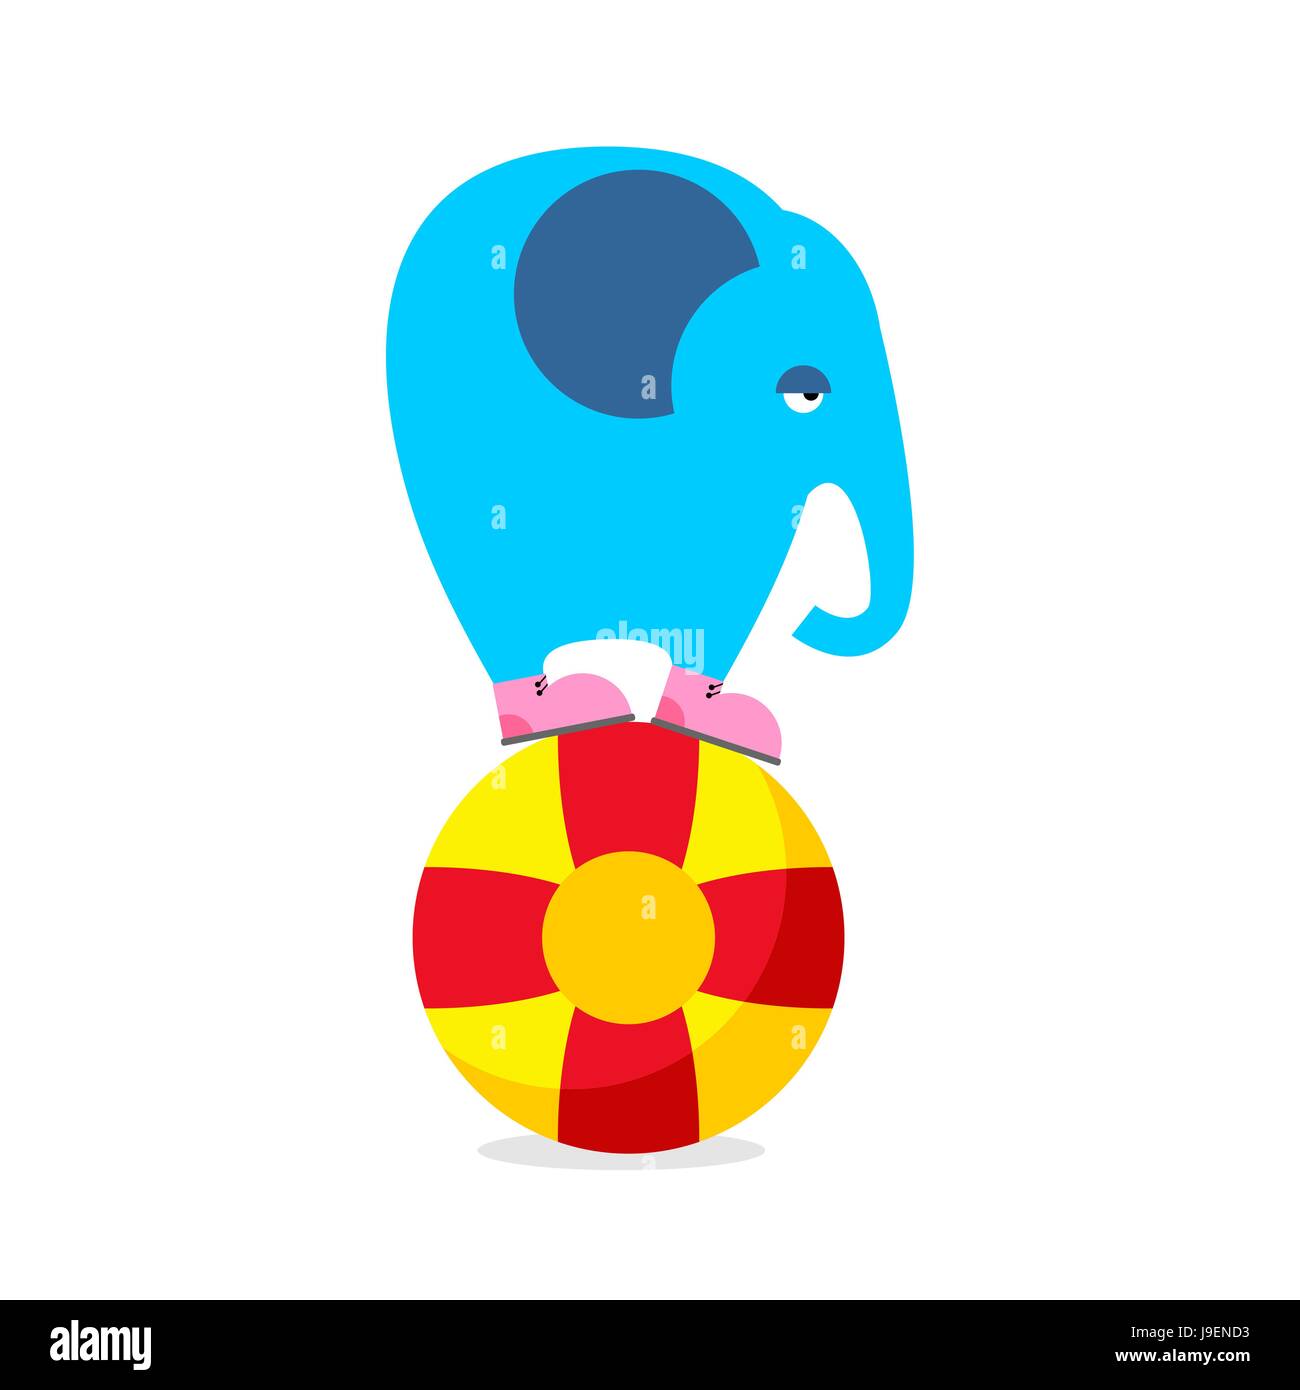 Blauer Elefant auf Kugel. Zirkus Tier durchführen. Traurige Elefant  amüsiert Kinder Zirkus. Wildes Tier des Dschungels im Zirkus  Stock-Vektorgrafik - Alamy